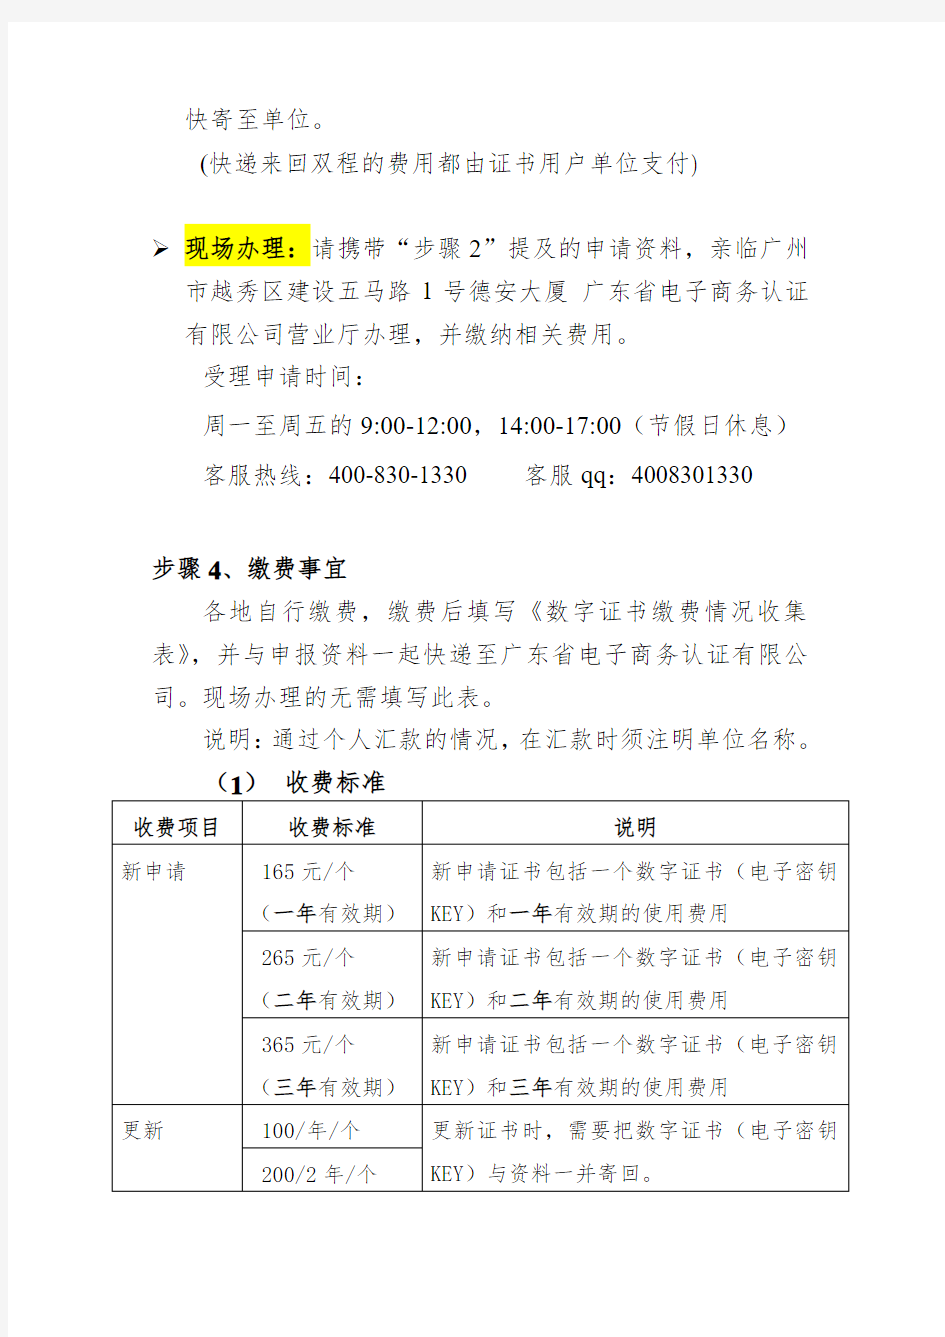 广东省机关事业单位人员管理系统